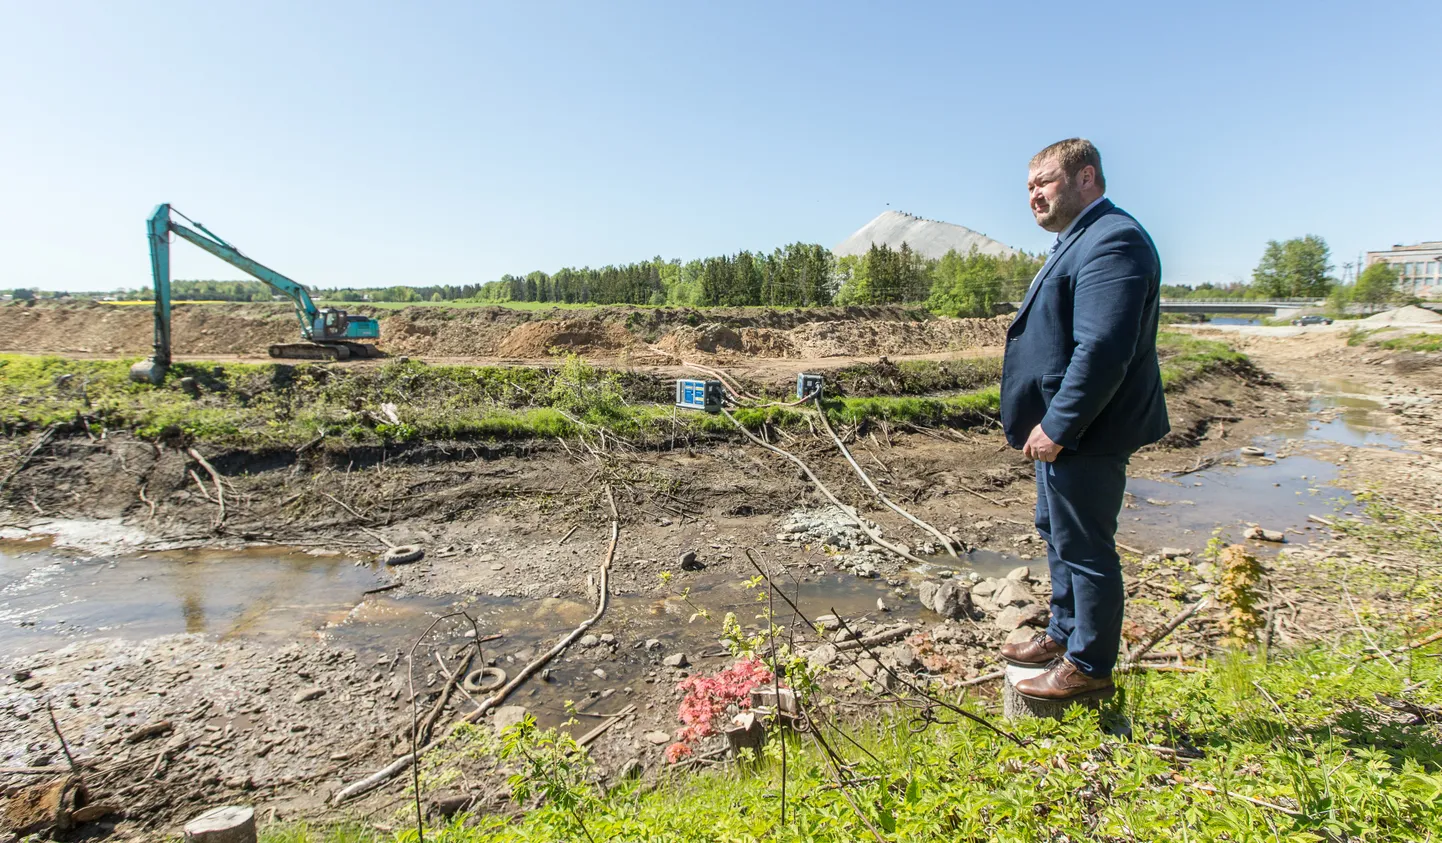 На "Järve Biopuhastus" министр окружающей среды Рене Кокк ощутить запах своим носом не успел, зато далее непосредственно на месте ознакомился с очисткой реки Пуртсе.